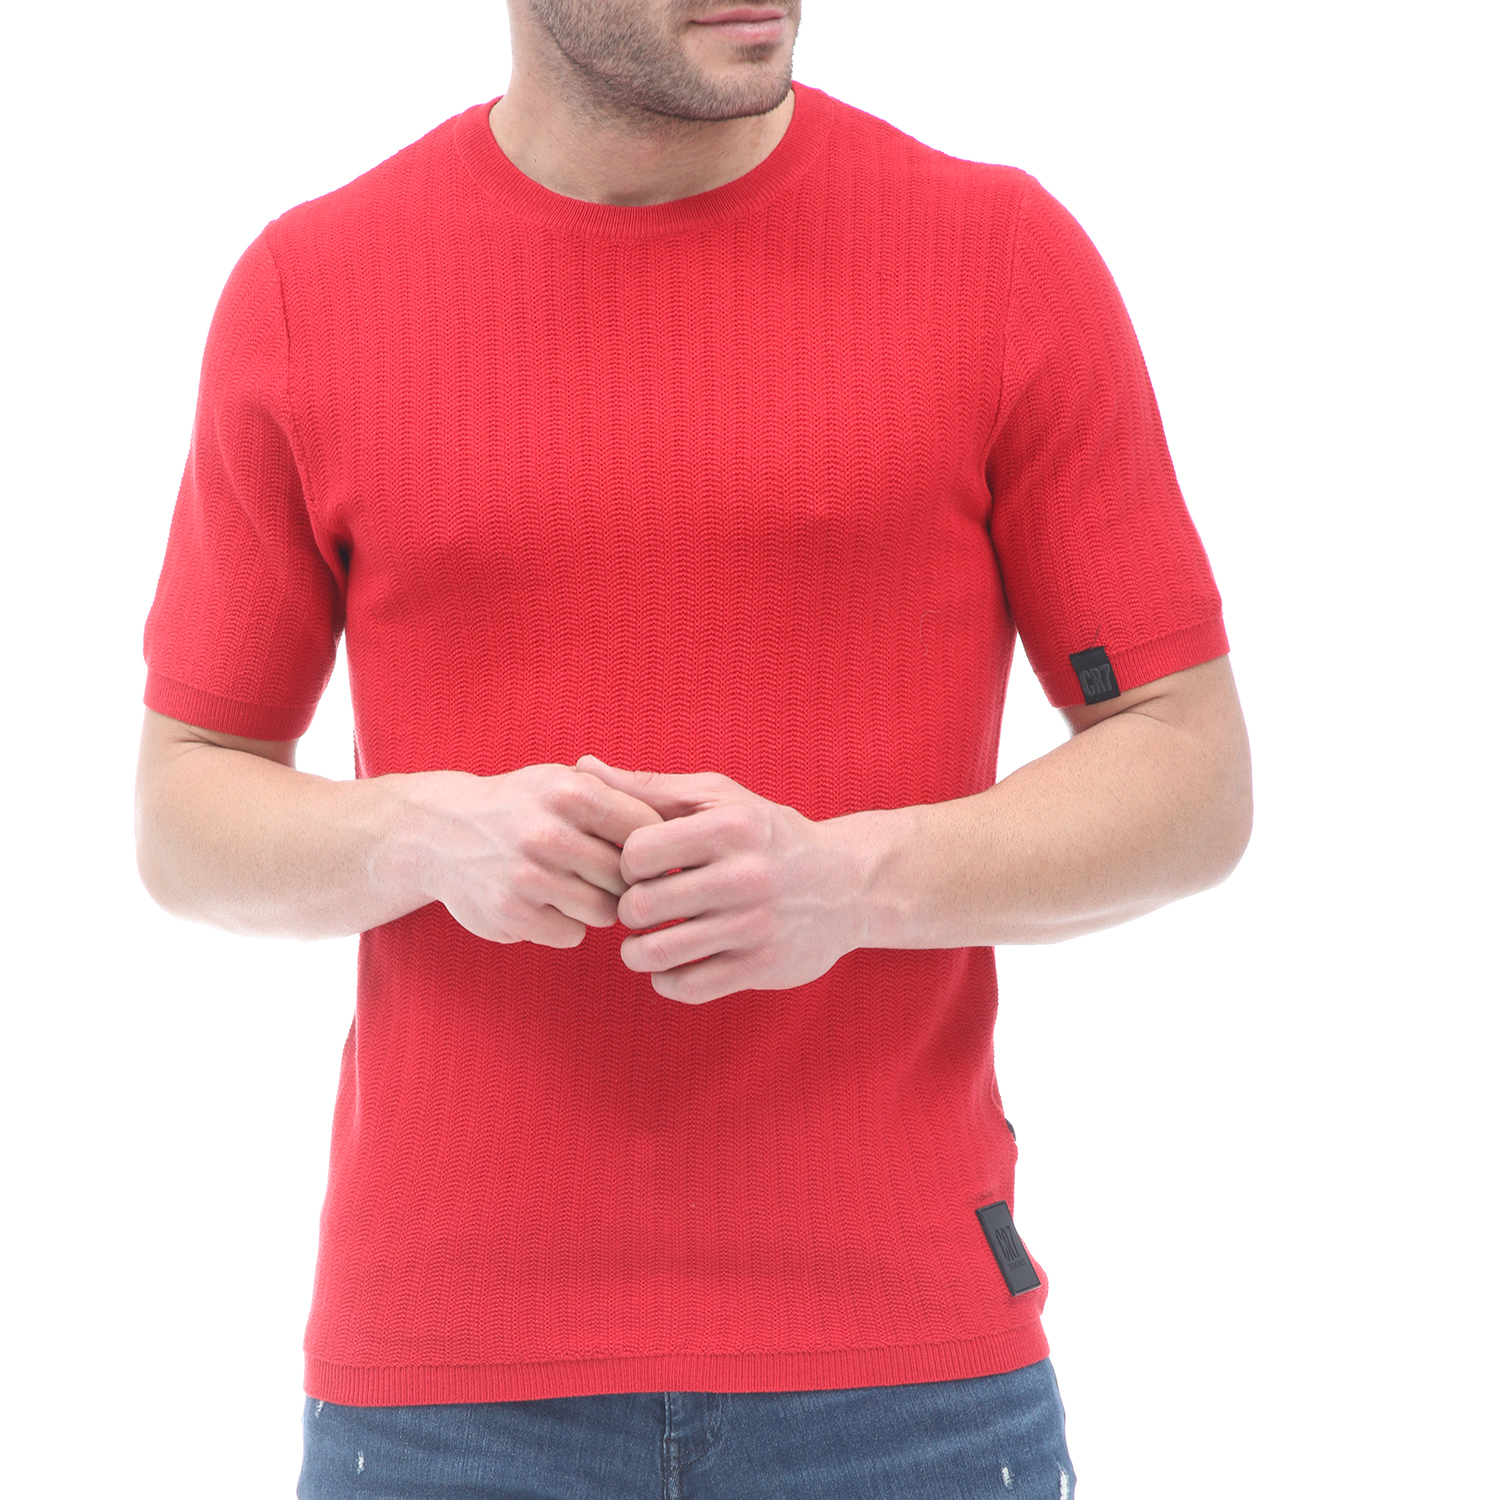 Ανδρικά/Ρούχα/Πλεκτά-Ζακέτες/Πουλόβερ CR7 - Ανδρική πλεκτή μπλούζα CR7 Casual Smart Sweater-Slim κόκκινη